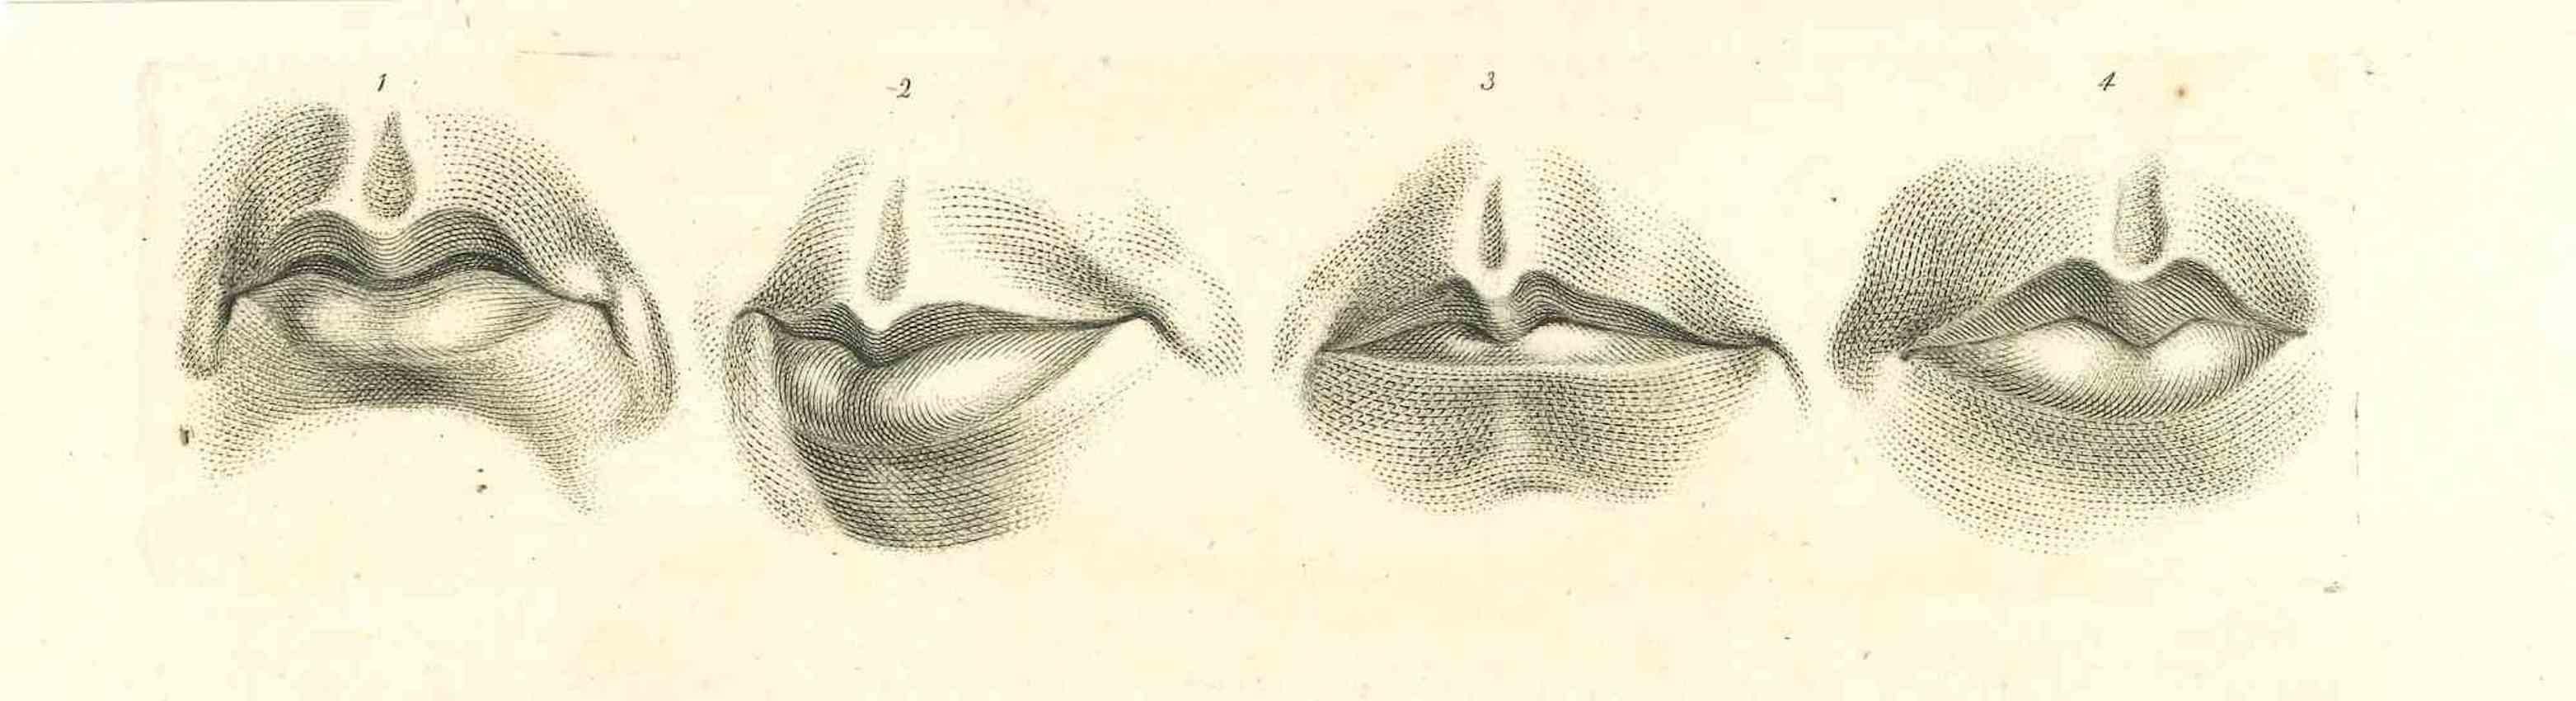 Lips - The Physiognomy ist eine Original-Radierung von Thomas Holloway für Johann Caspar Lavaters "Essays on Physiognomy, Designed to Promote the Knowledge and the Love of Mankind", London, Bensley, 1810. 

Gute Bedingungen.

Johann Caspar Lavater